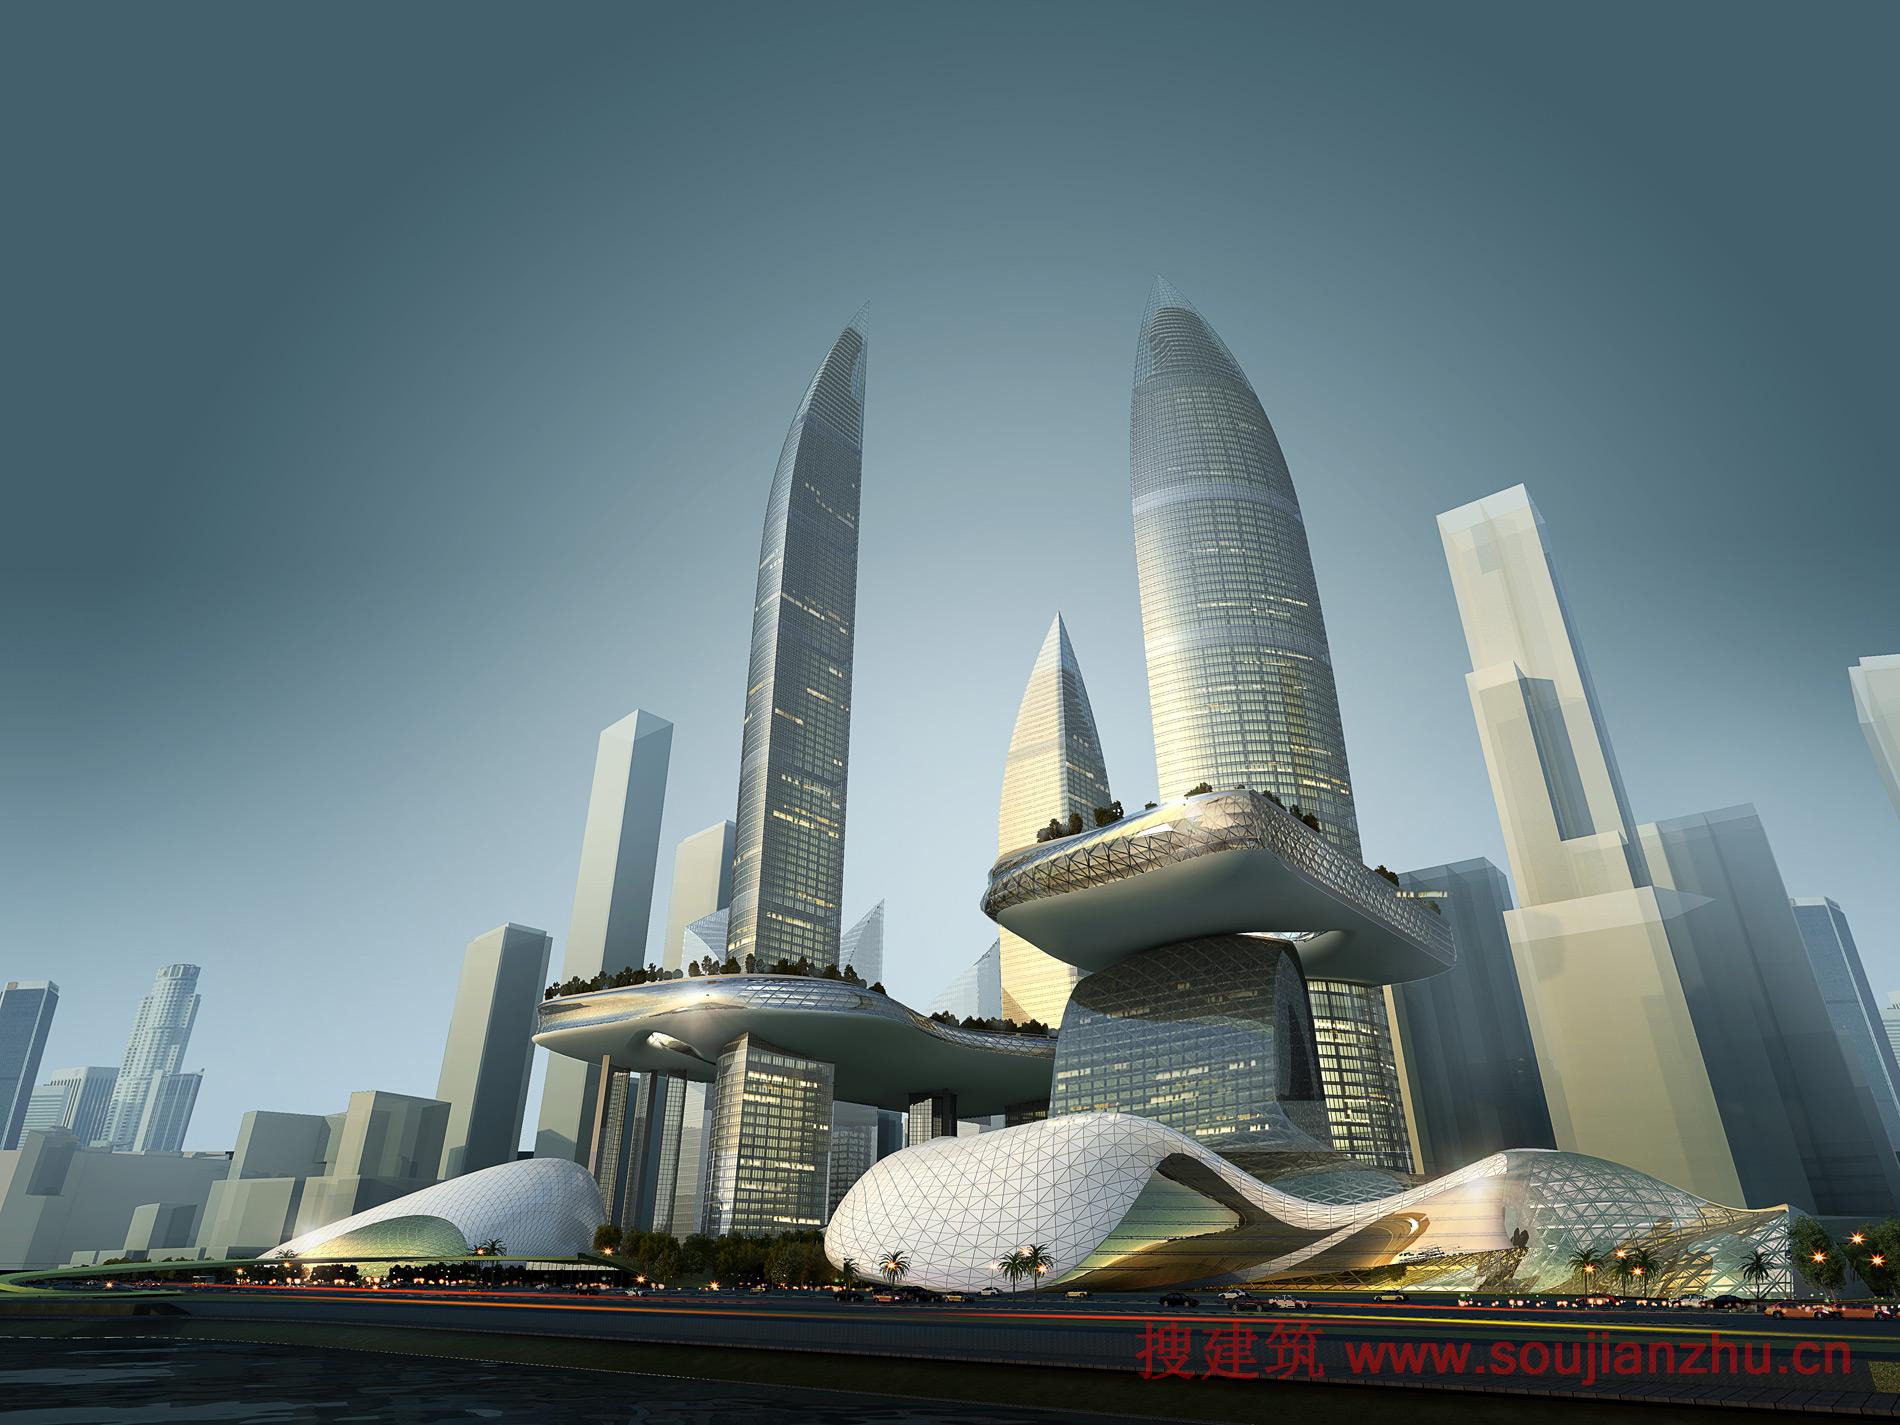 搜建筑网 -- 深圳湾“超级城市”国际竞赛作品汇总